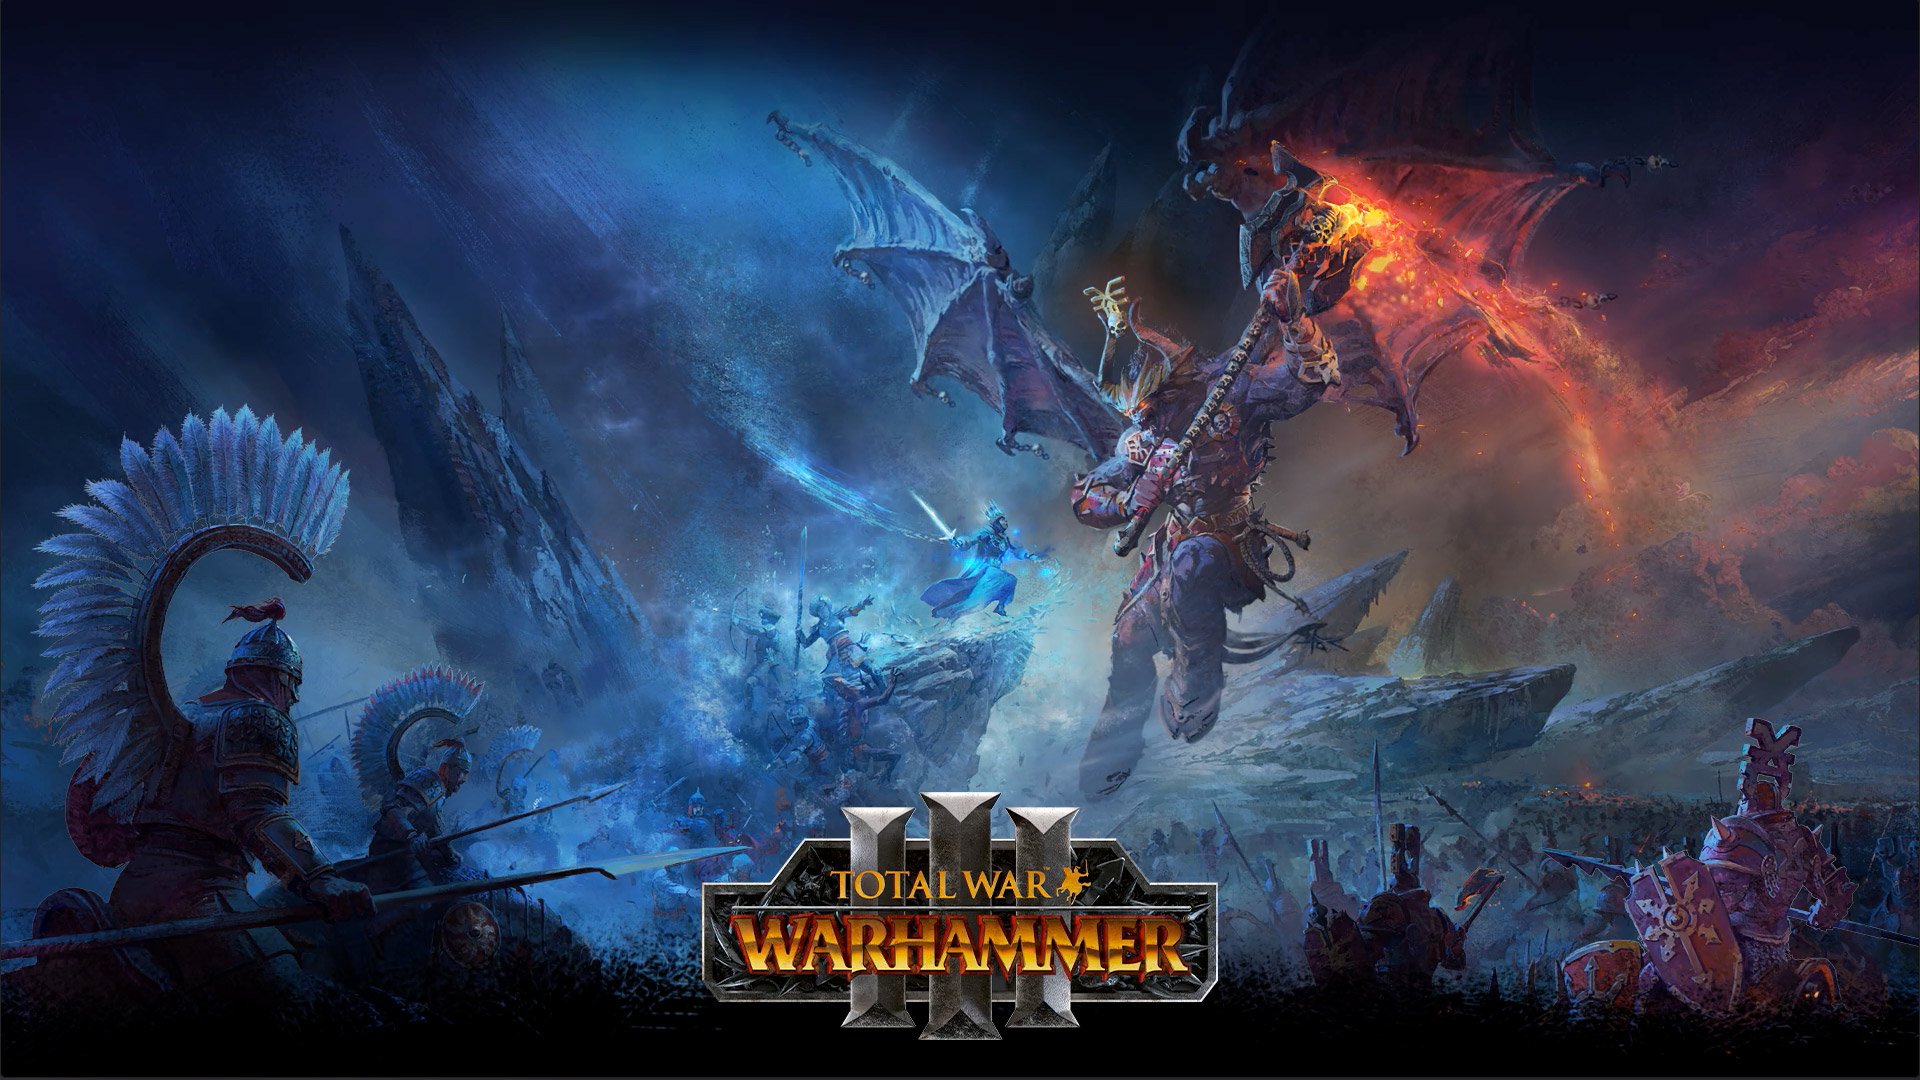 Total War Warhammer 3, Een ijstovenaar neemt het op tegen een gigantische drakendemon boven een slagveld. 